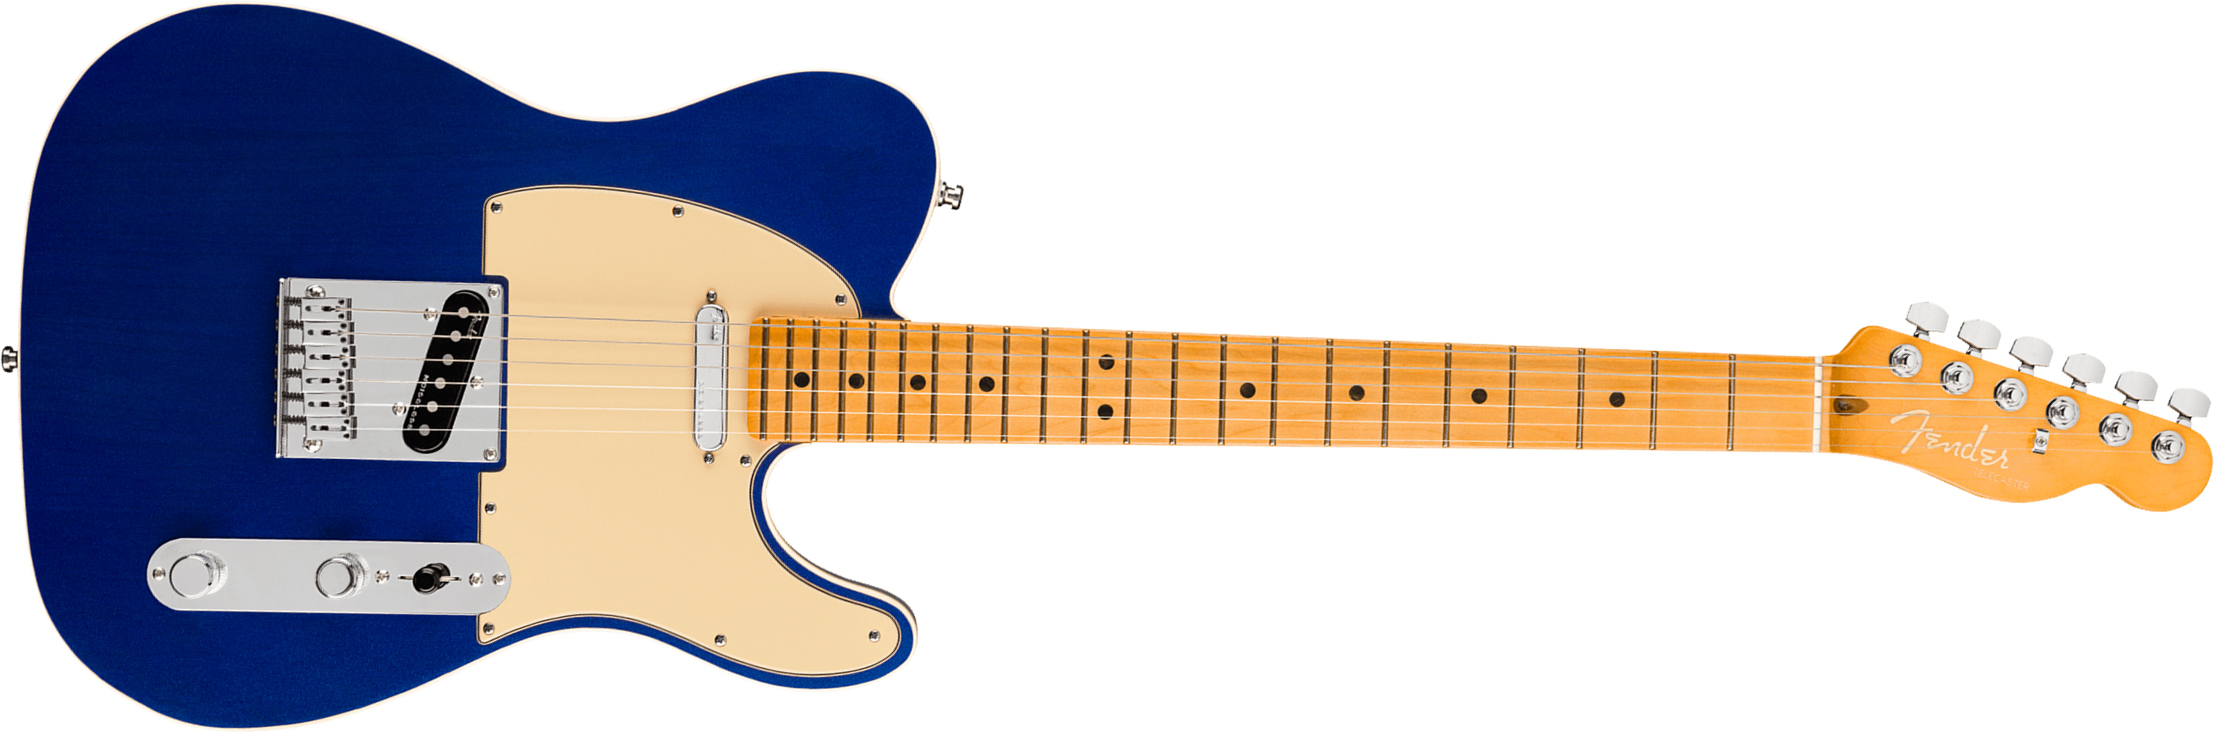 Fender Tele American Ultra 2019 Usa Mn - Cobra Blue - Tel shape electric guitar - Main picture